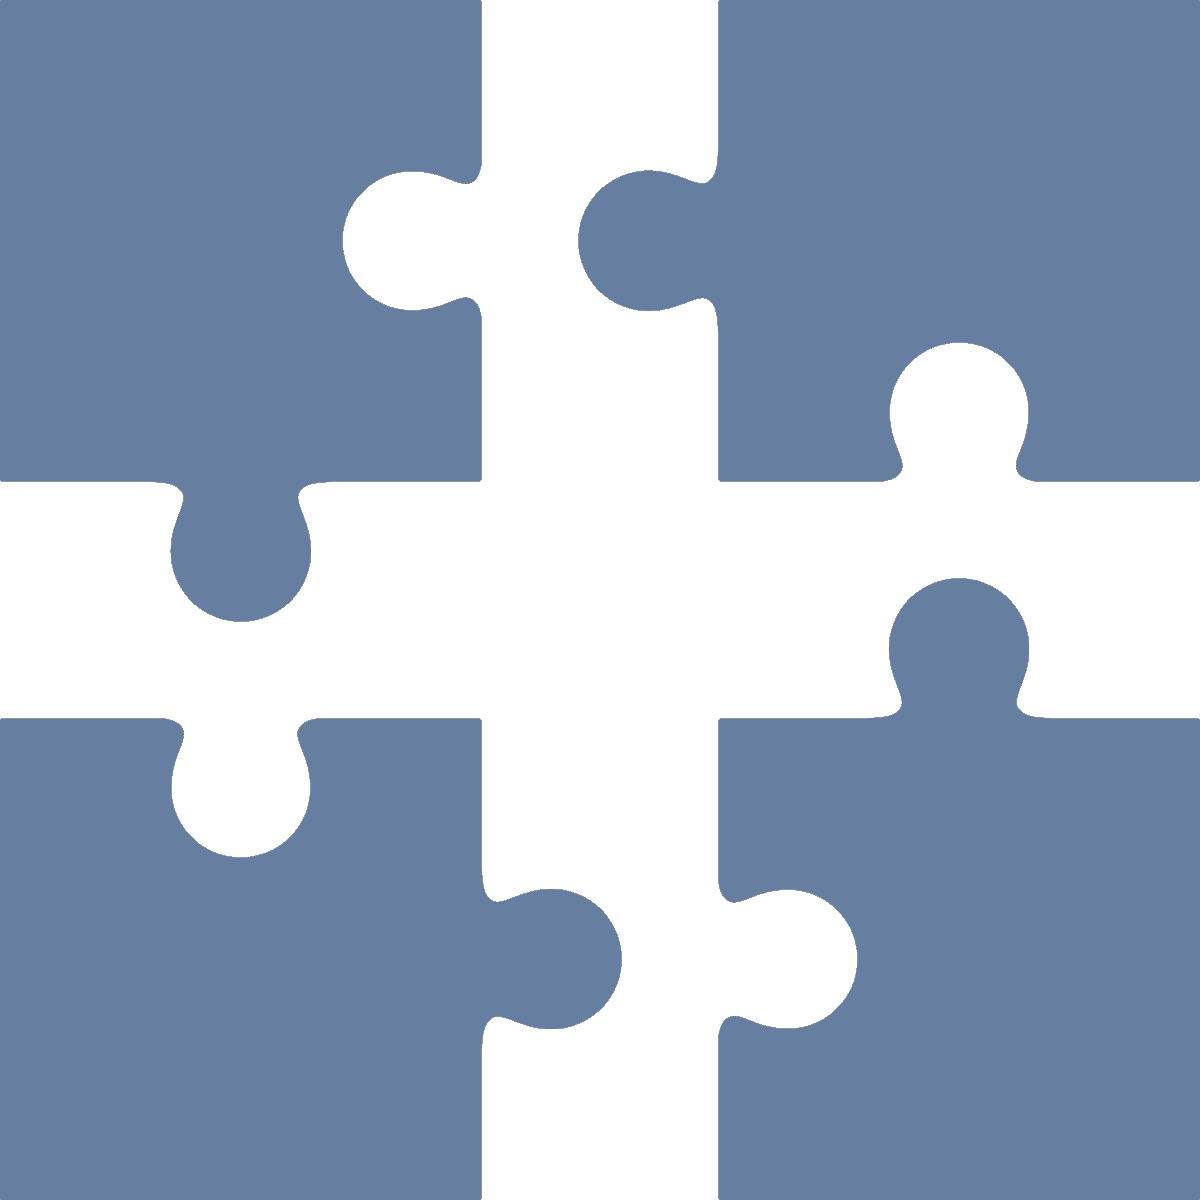 Four Puzzle Pieces Transparent Image